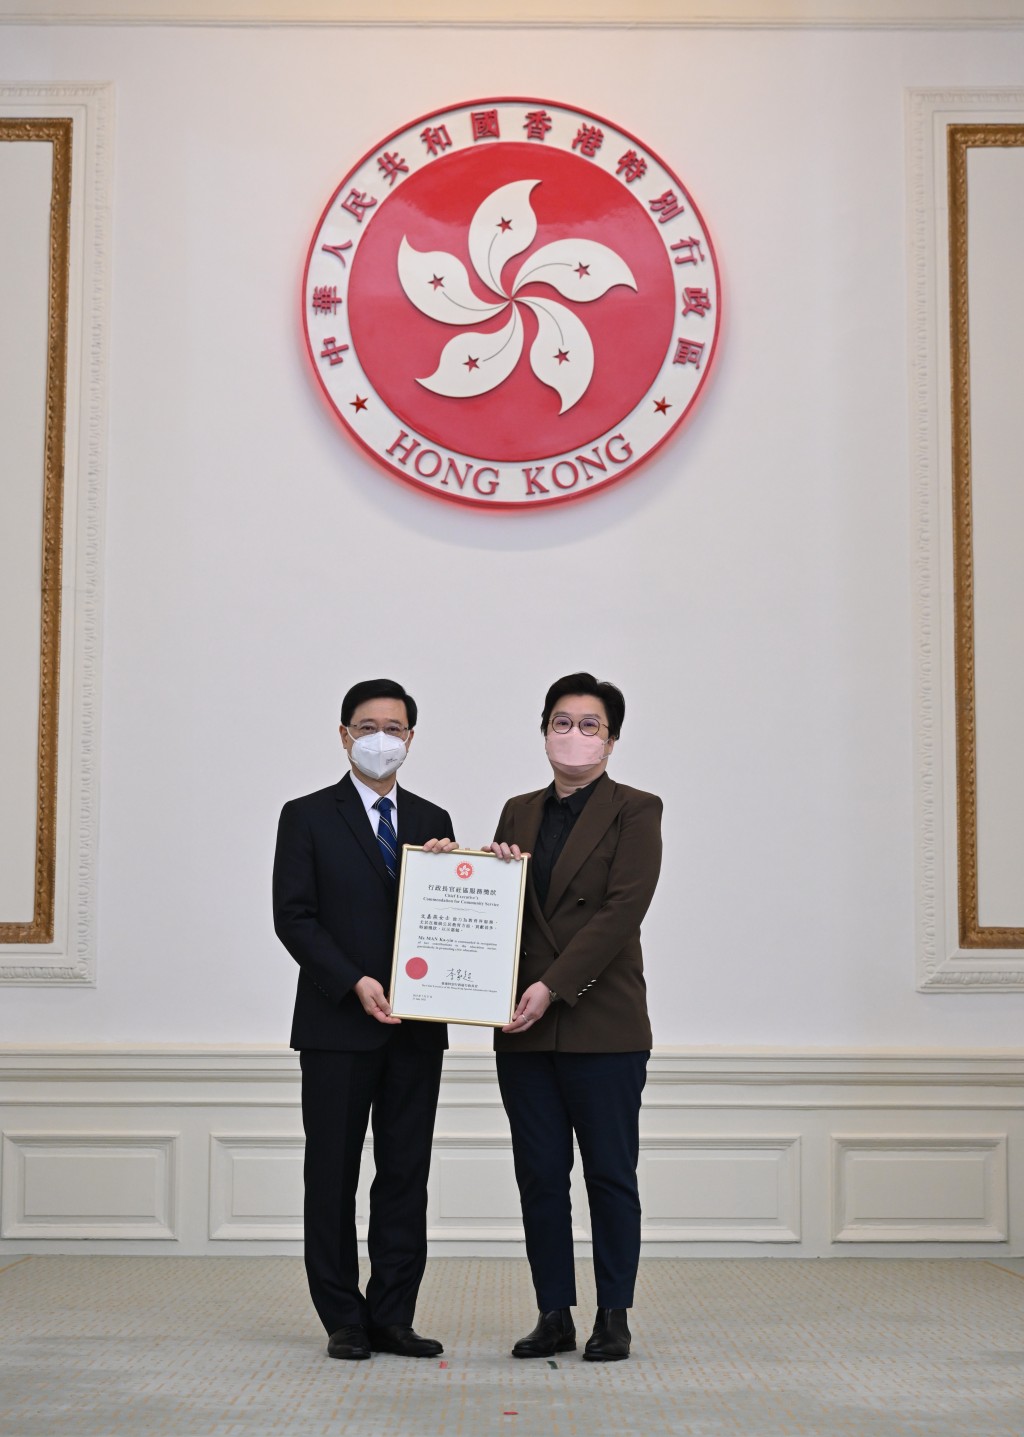 文嘉燕副校长获香港特区政府颁发行政长官社区服务奖状。